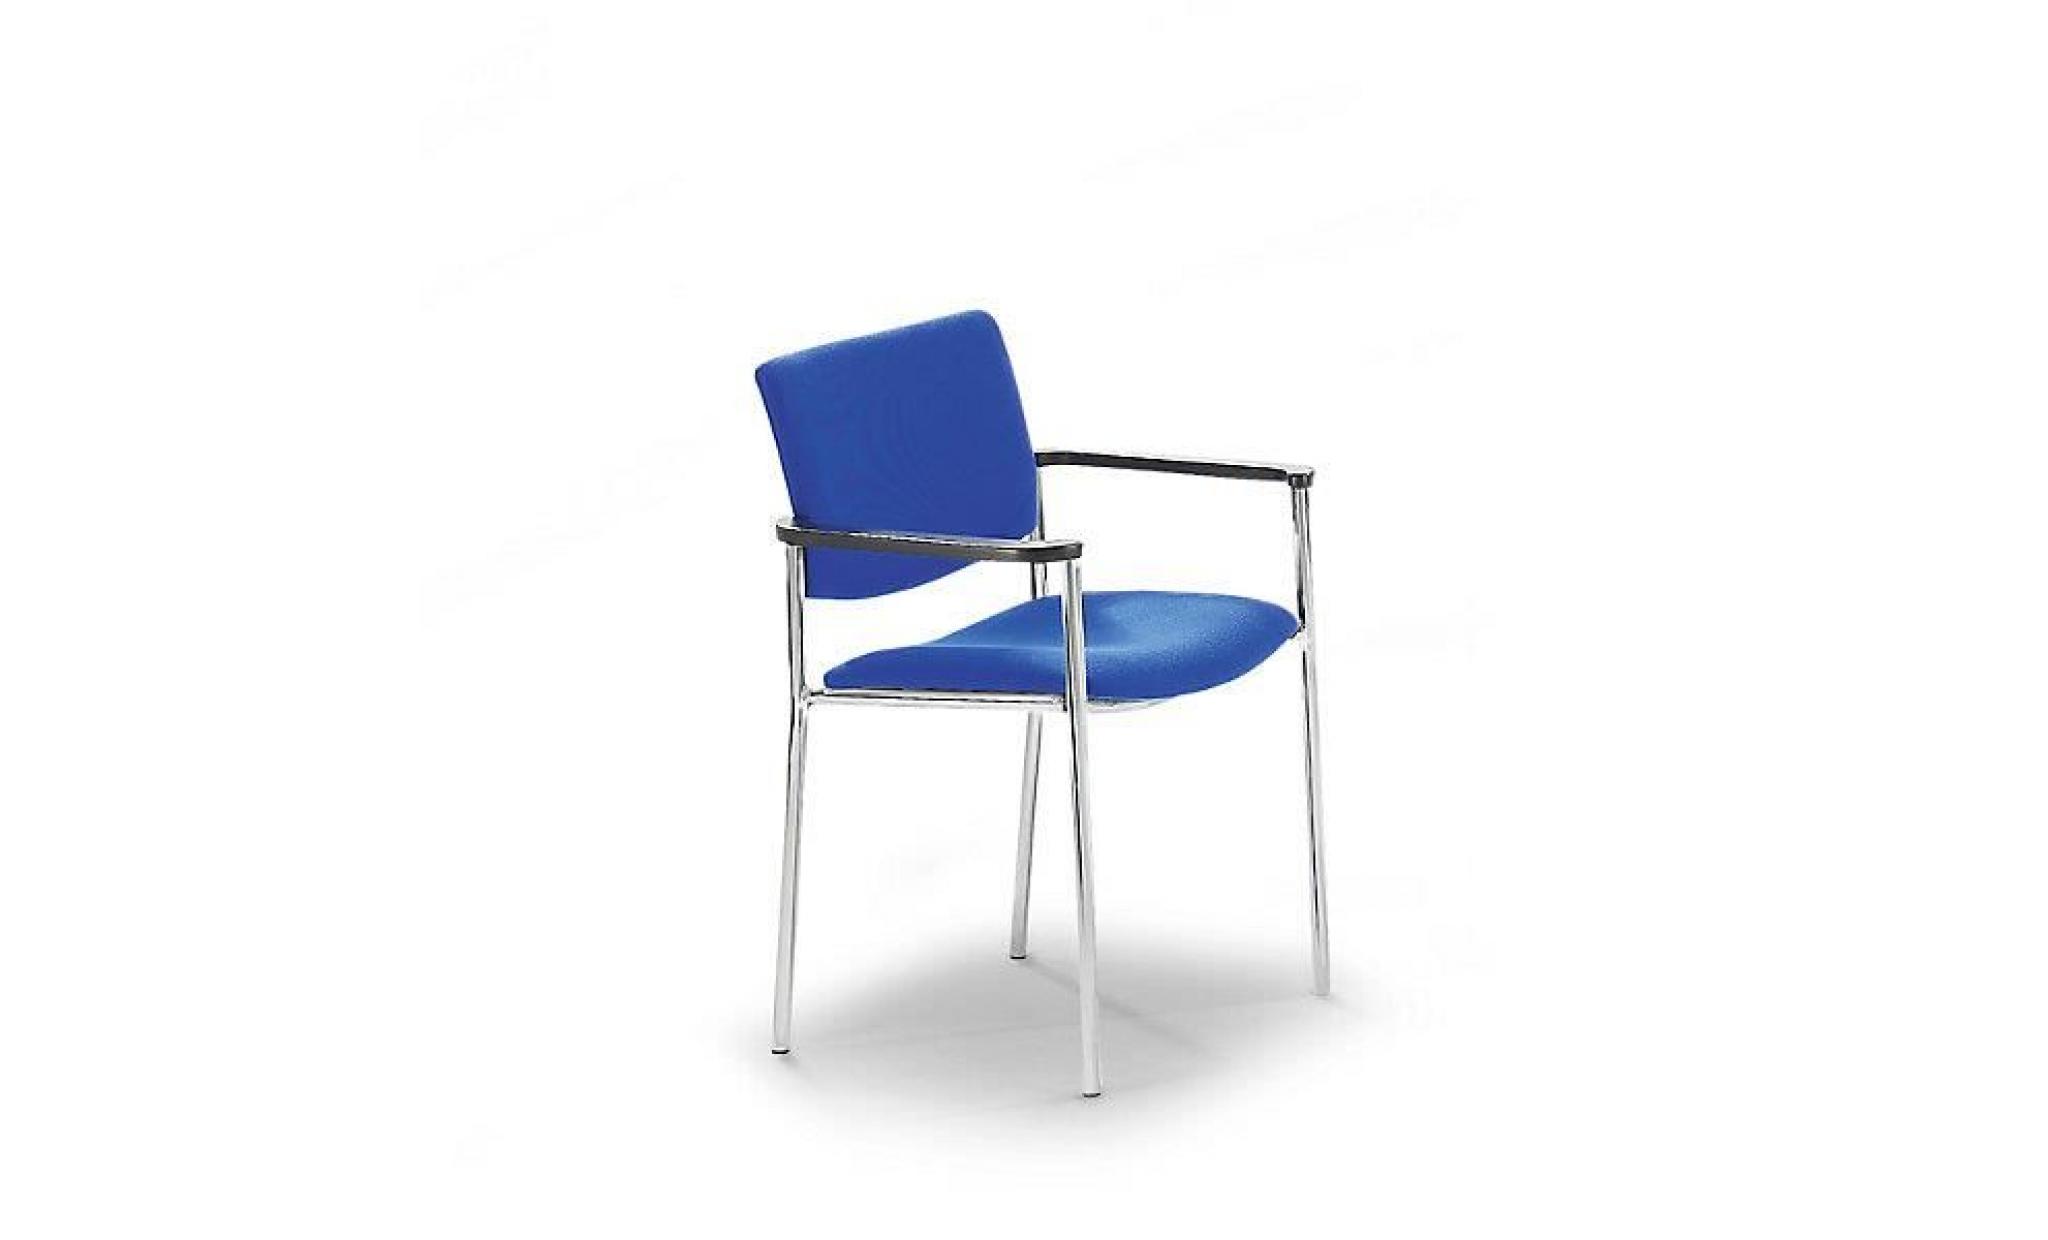 siège visiteur rembourré à patins en plastique   piétement coloris aluminium habillage bleu   chaise de conférence chaise de réunion